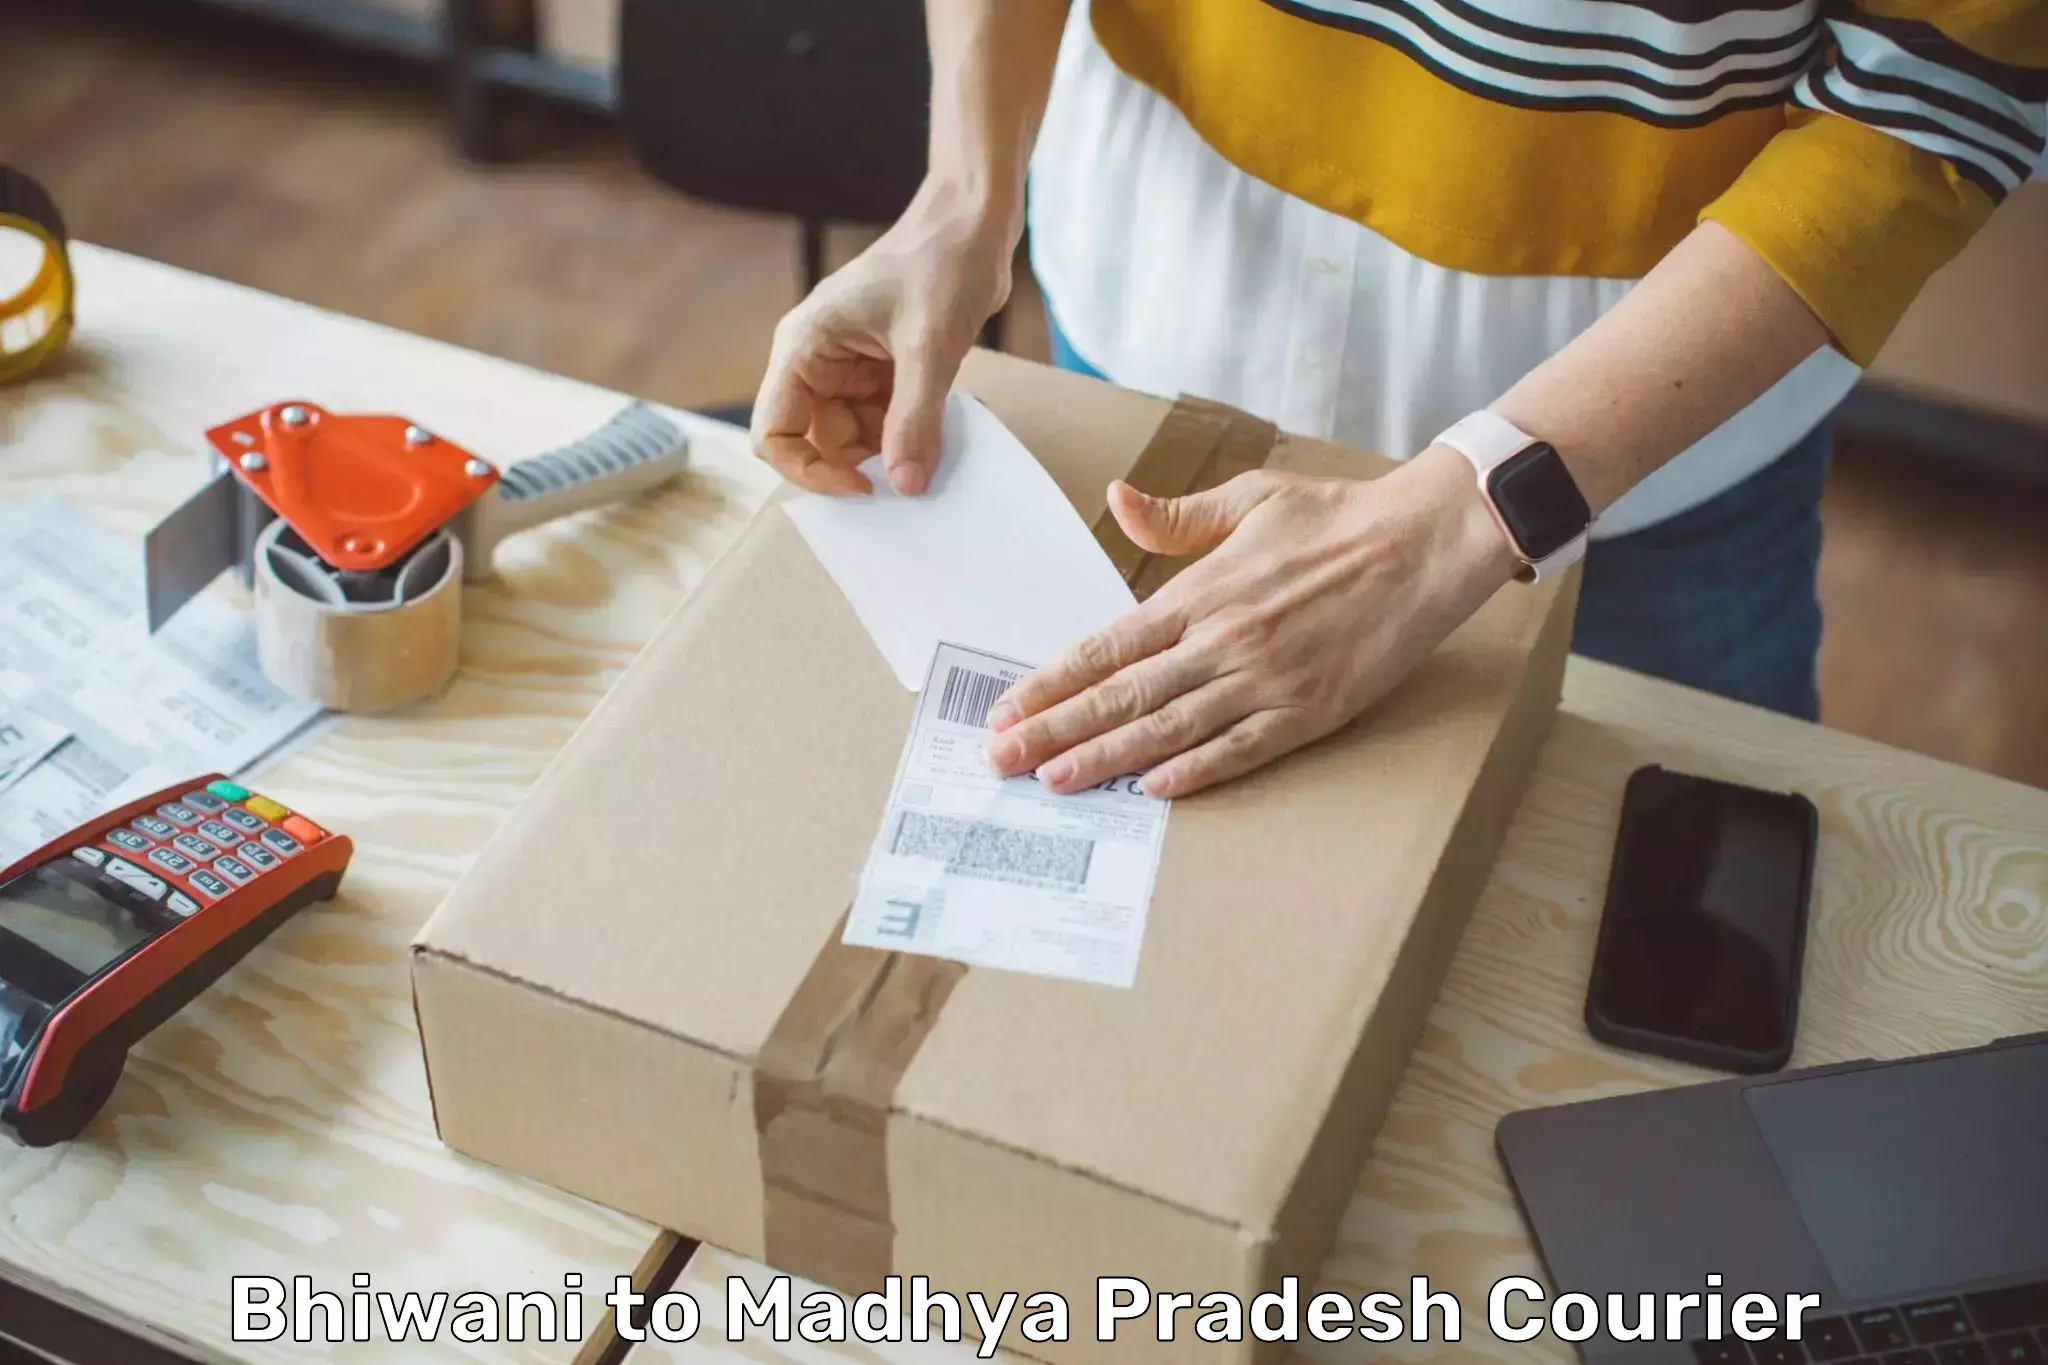 Custom courier packaging Bhiwani to Madhya Pradesh